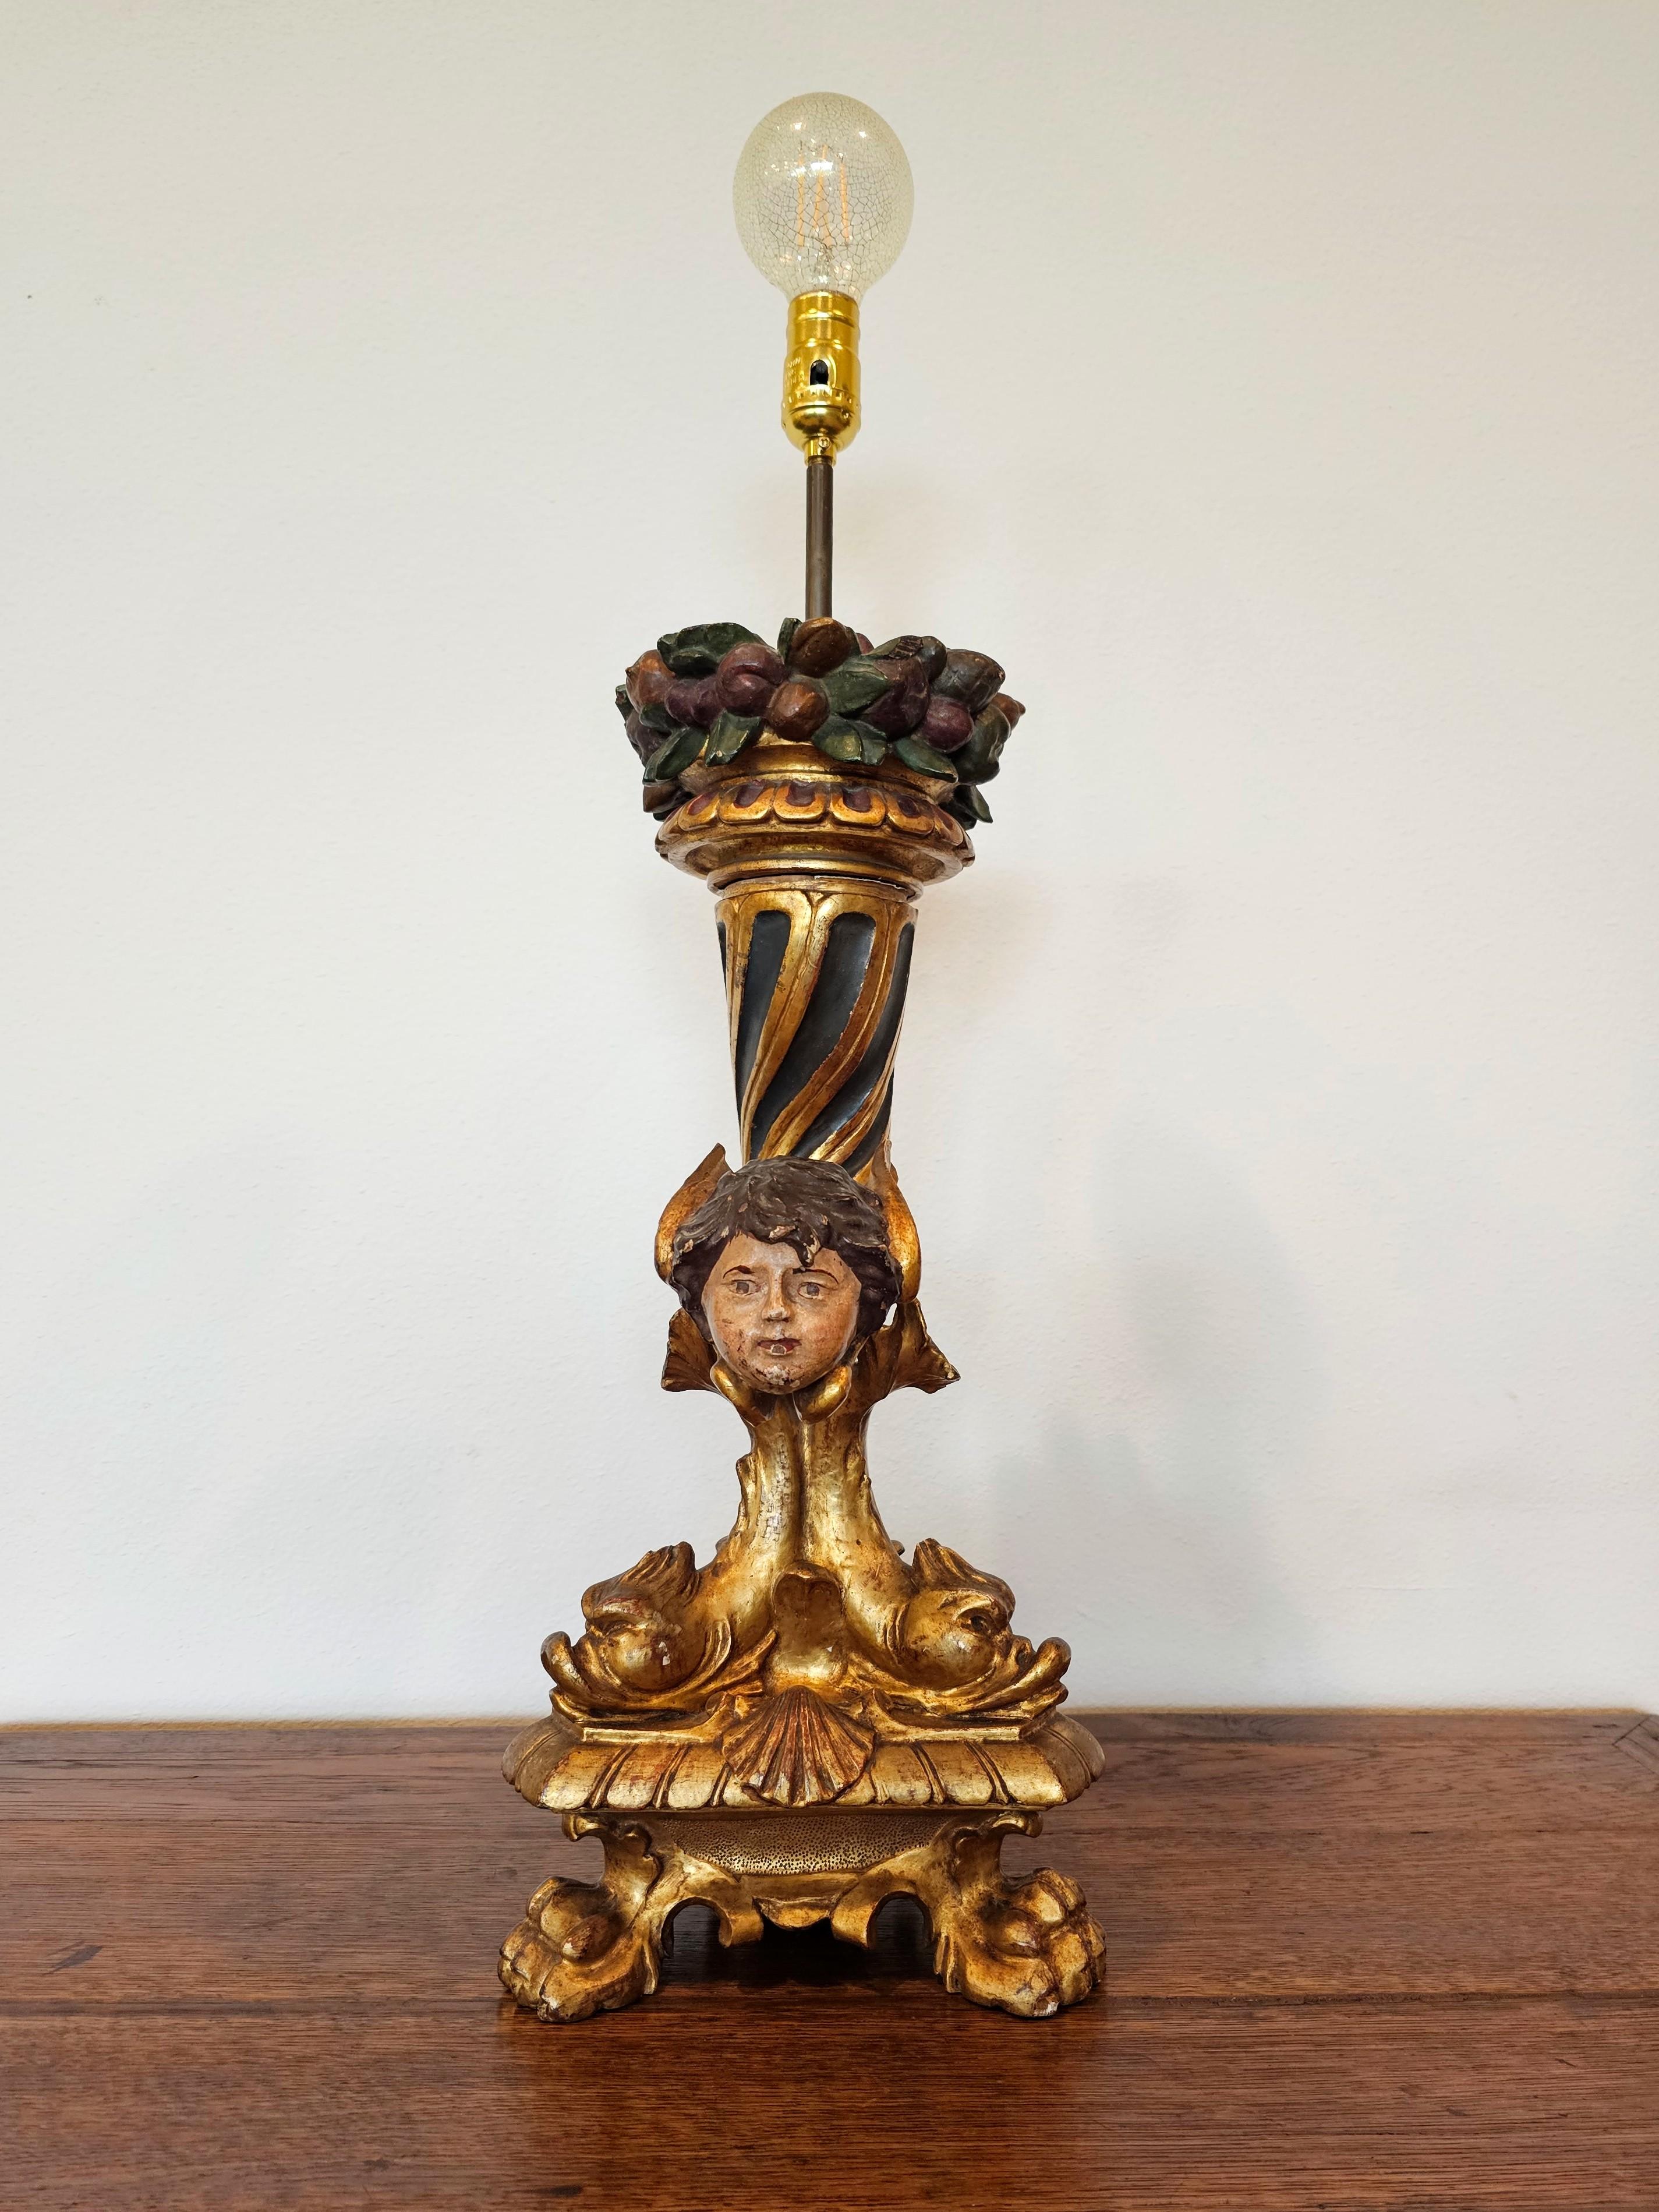 Un fabuleux chandelier figuratif en bois doré d'époque Empire français, début du 19e siècle, maintenant électrifié par des professionnels et transformé en lampe de table à une seule lumière.

En bois doré, sculpté, gessoïsé et polychromé, la forme